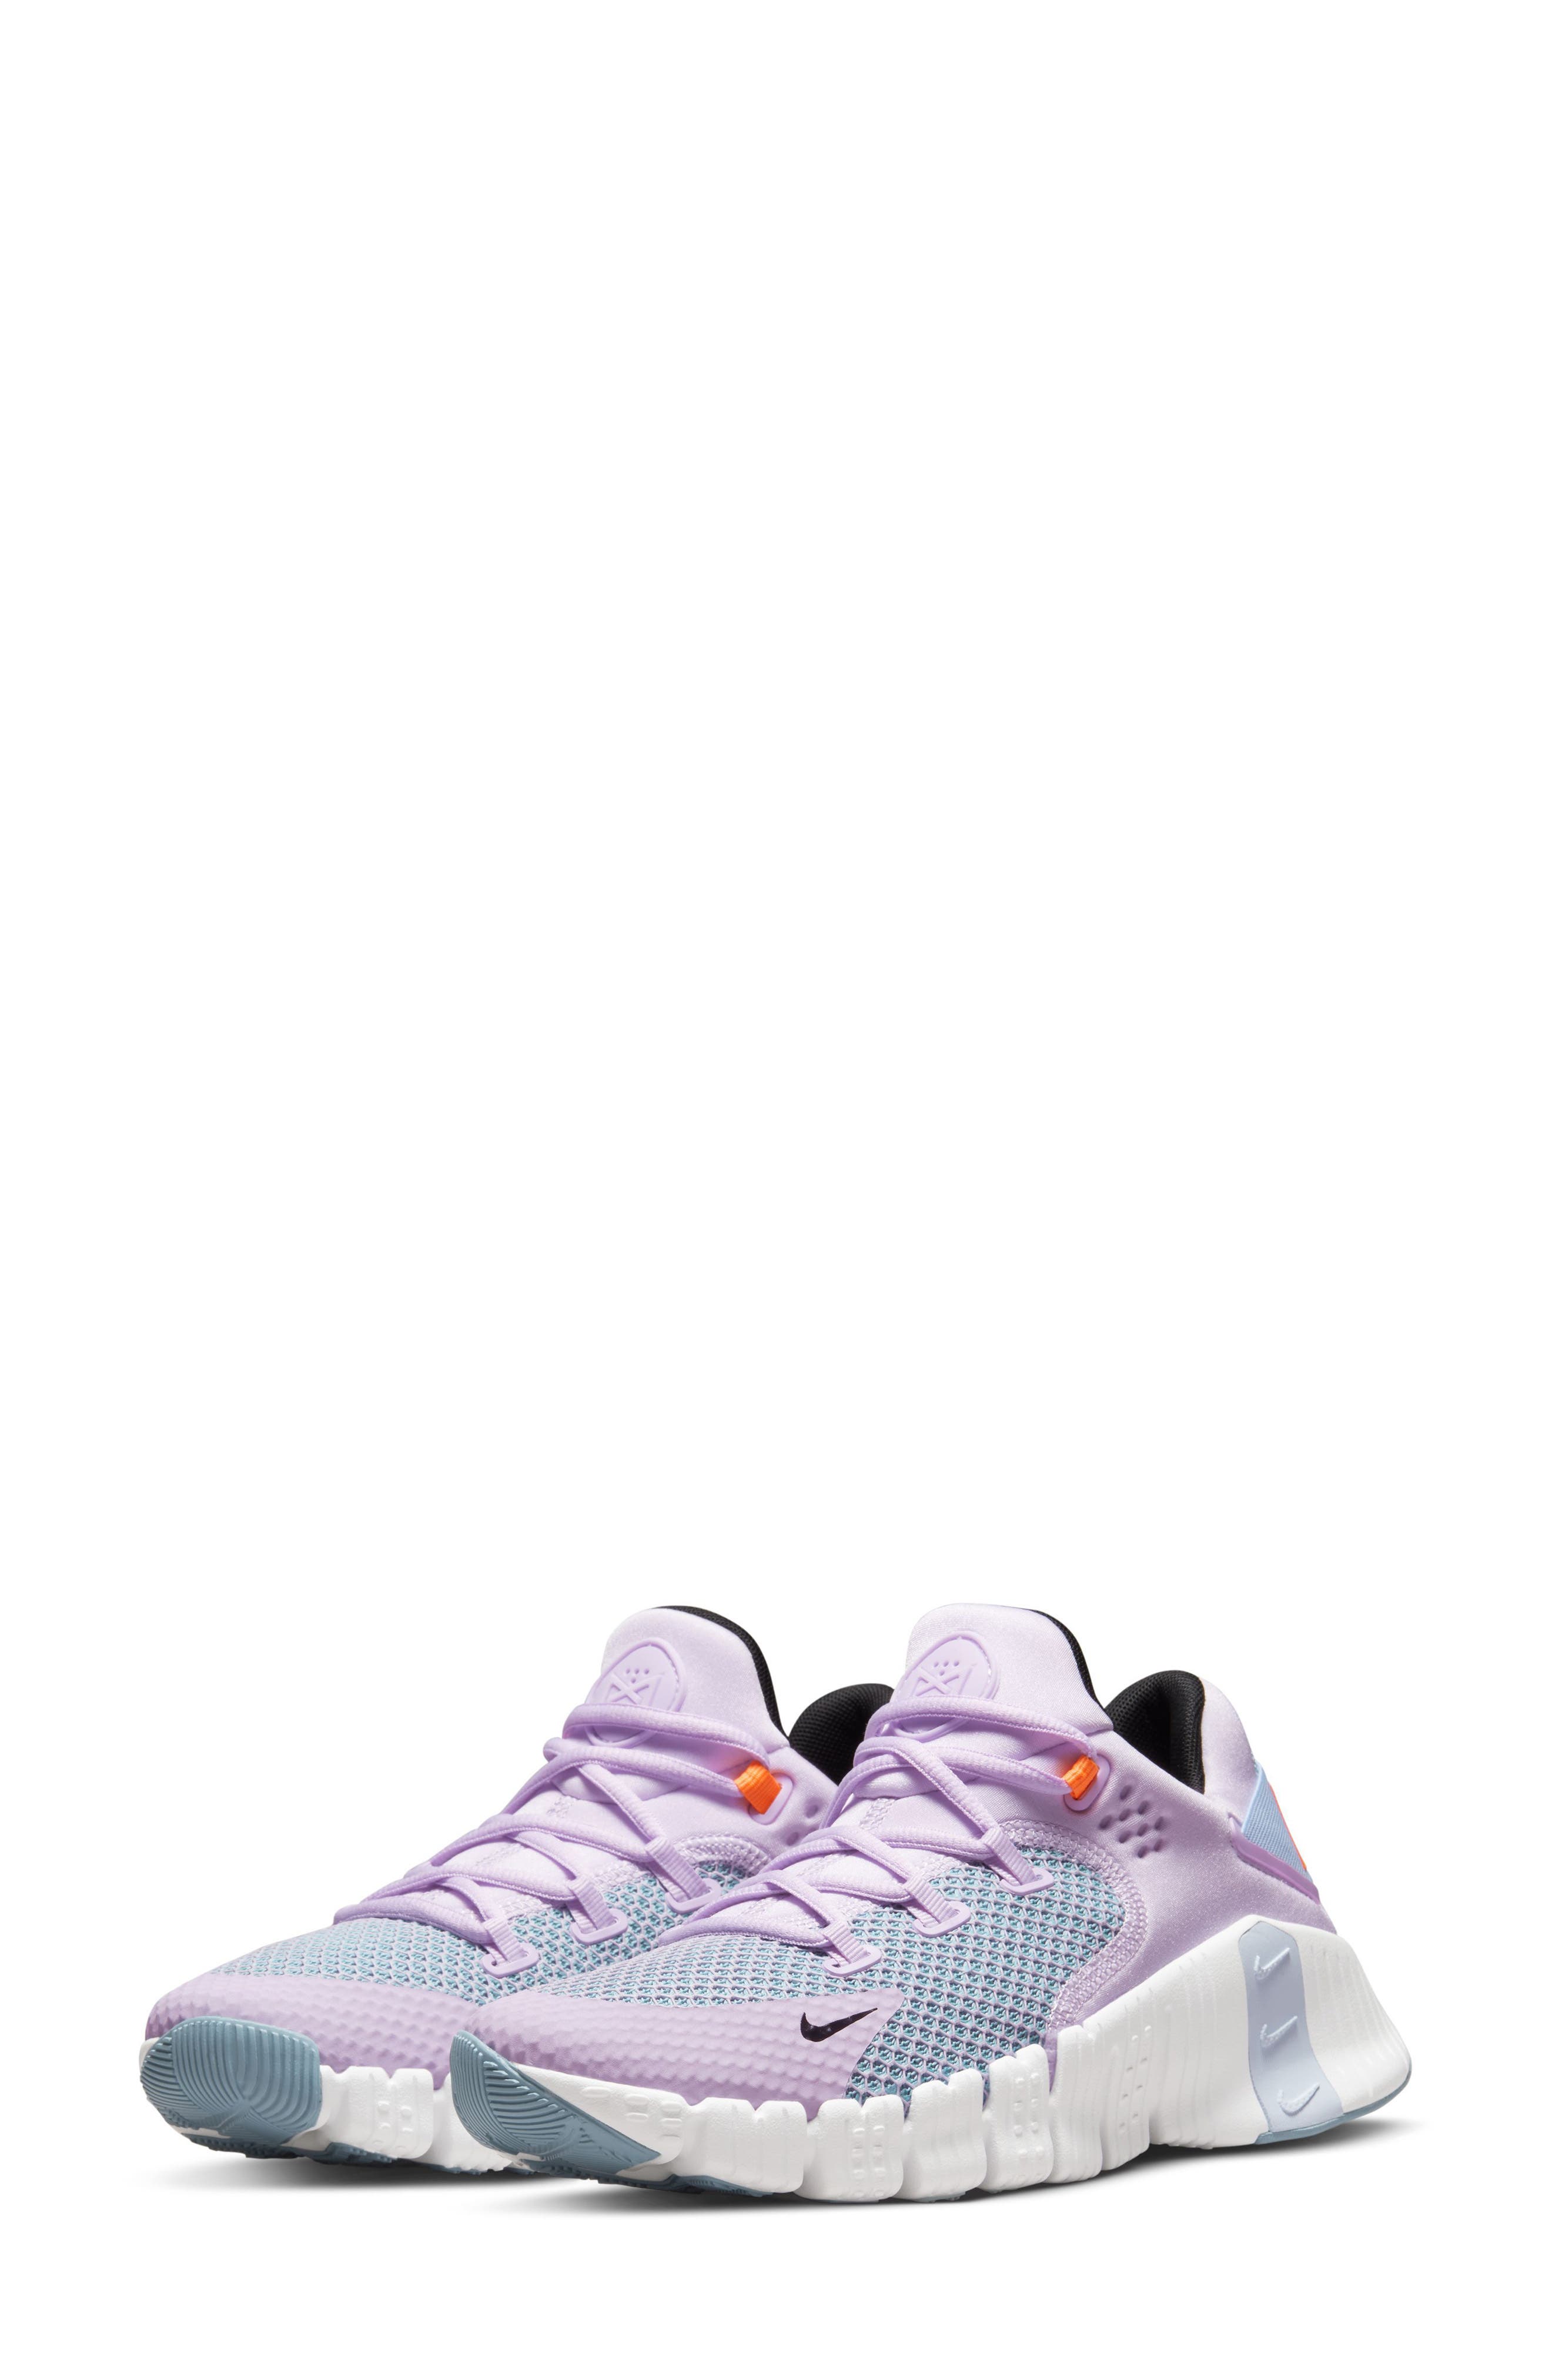 light purple sneakers women's